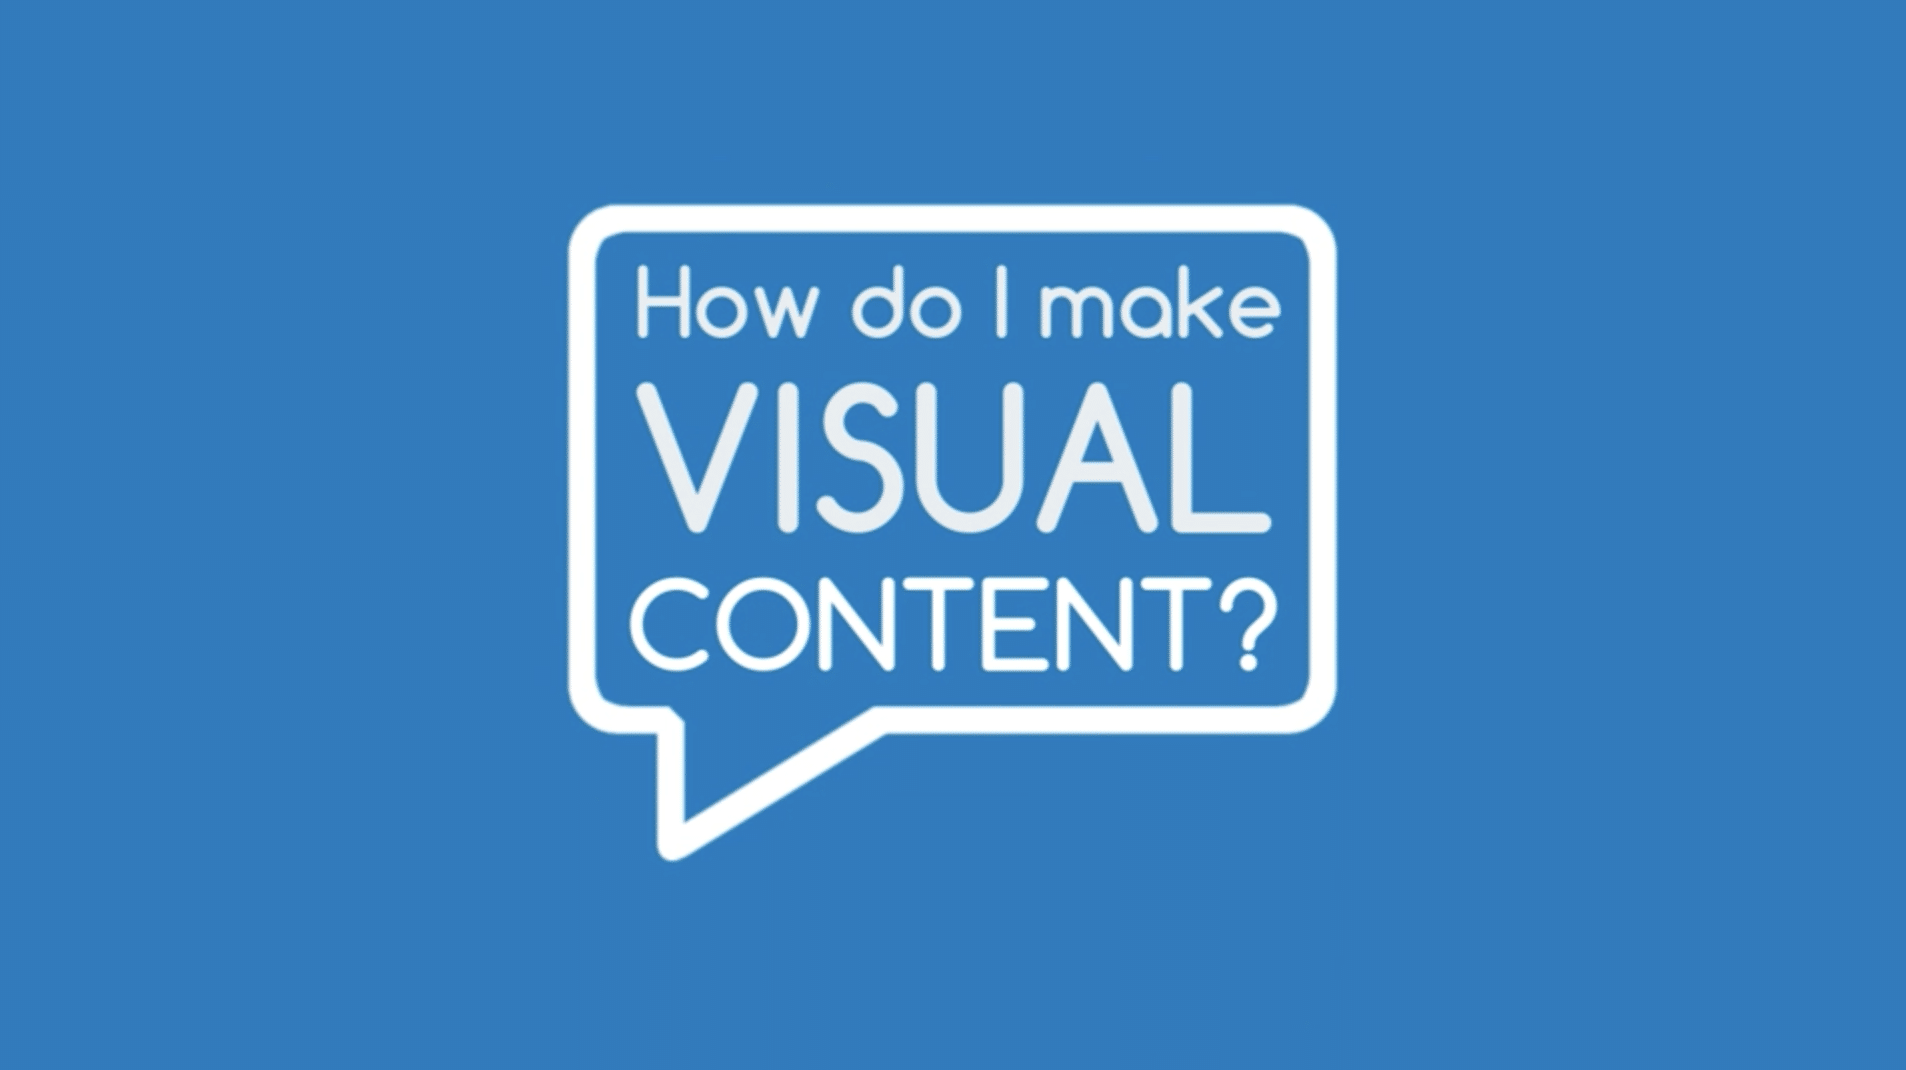 How do I create visual content?